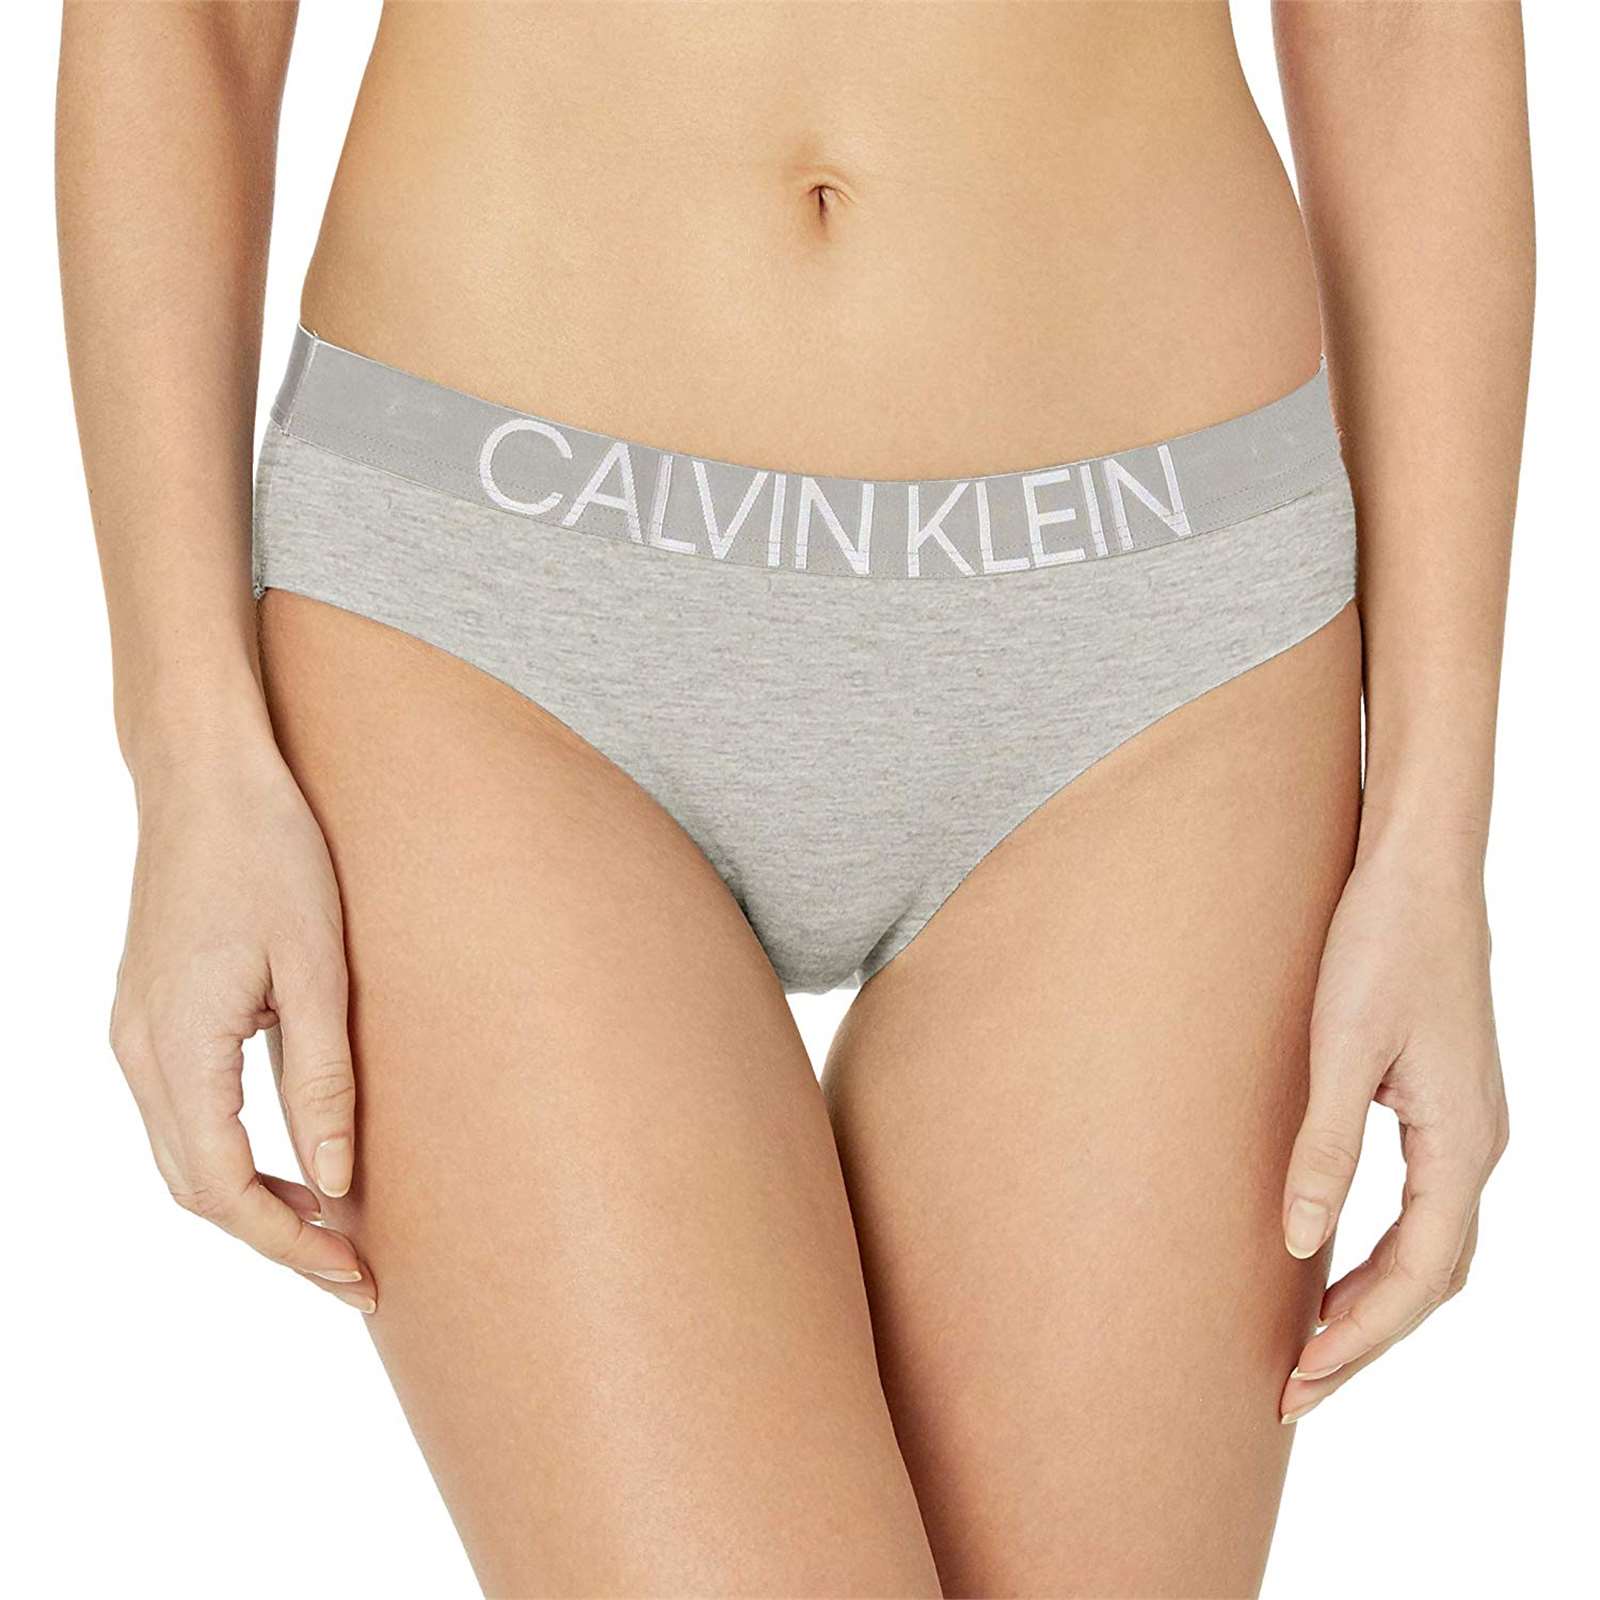 Calvin Klein Women Statement 1981 Cotton Stretch Bikini